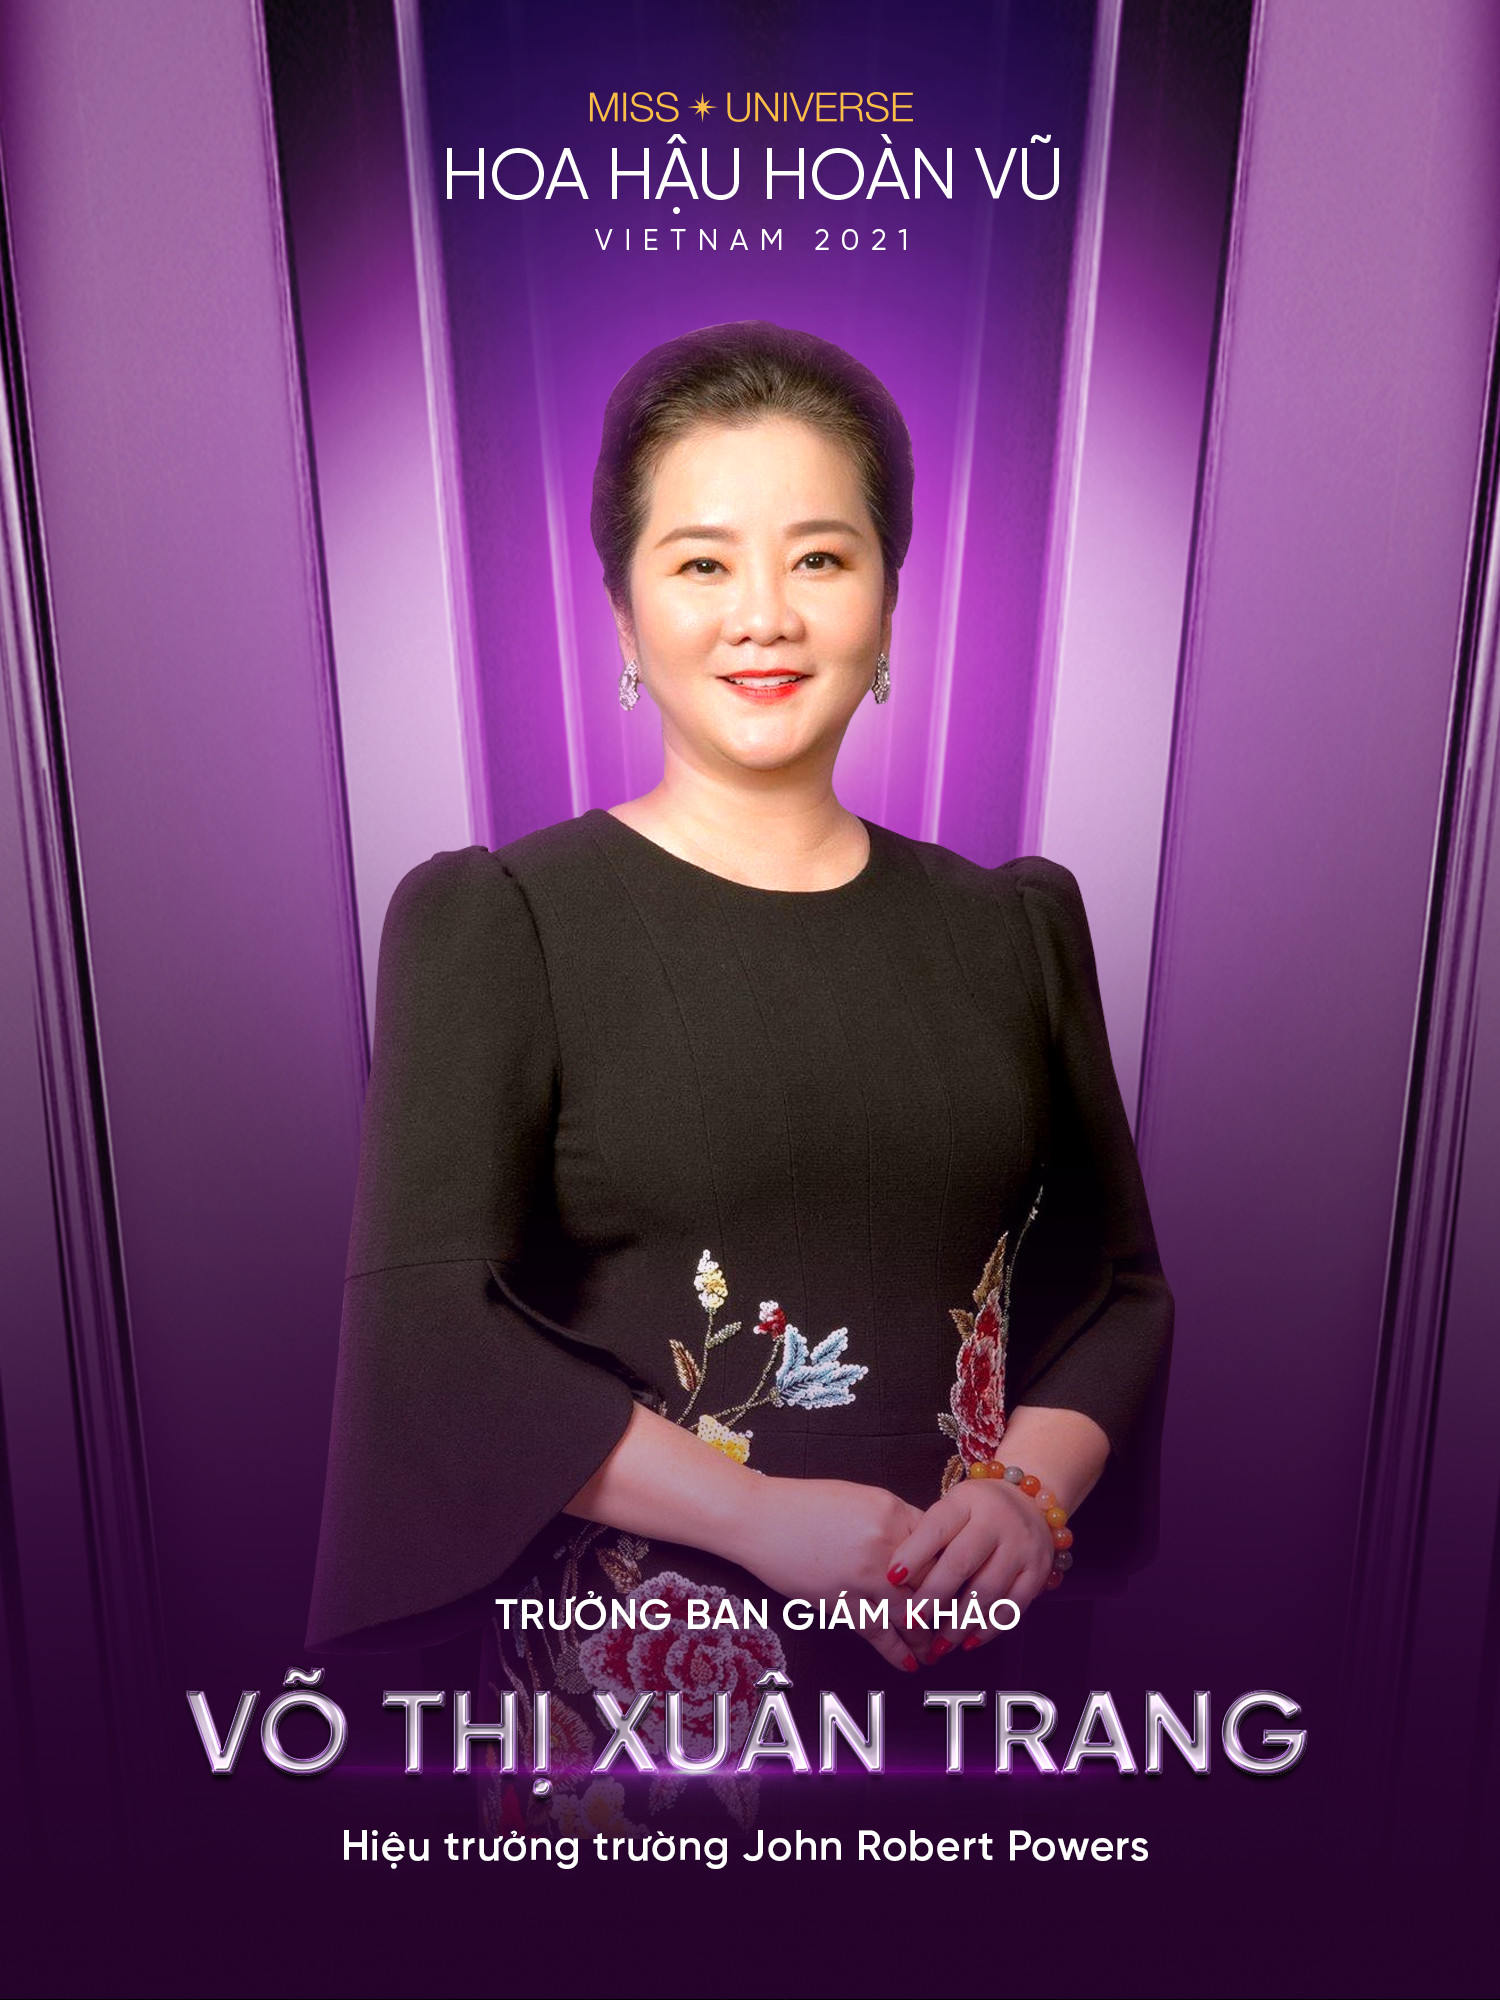 Ms Vo Thi Xuan Trang_Truong Ban Giam Khao Hoa hau Hoan Vu Viet Nam 2021